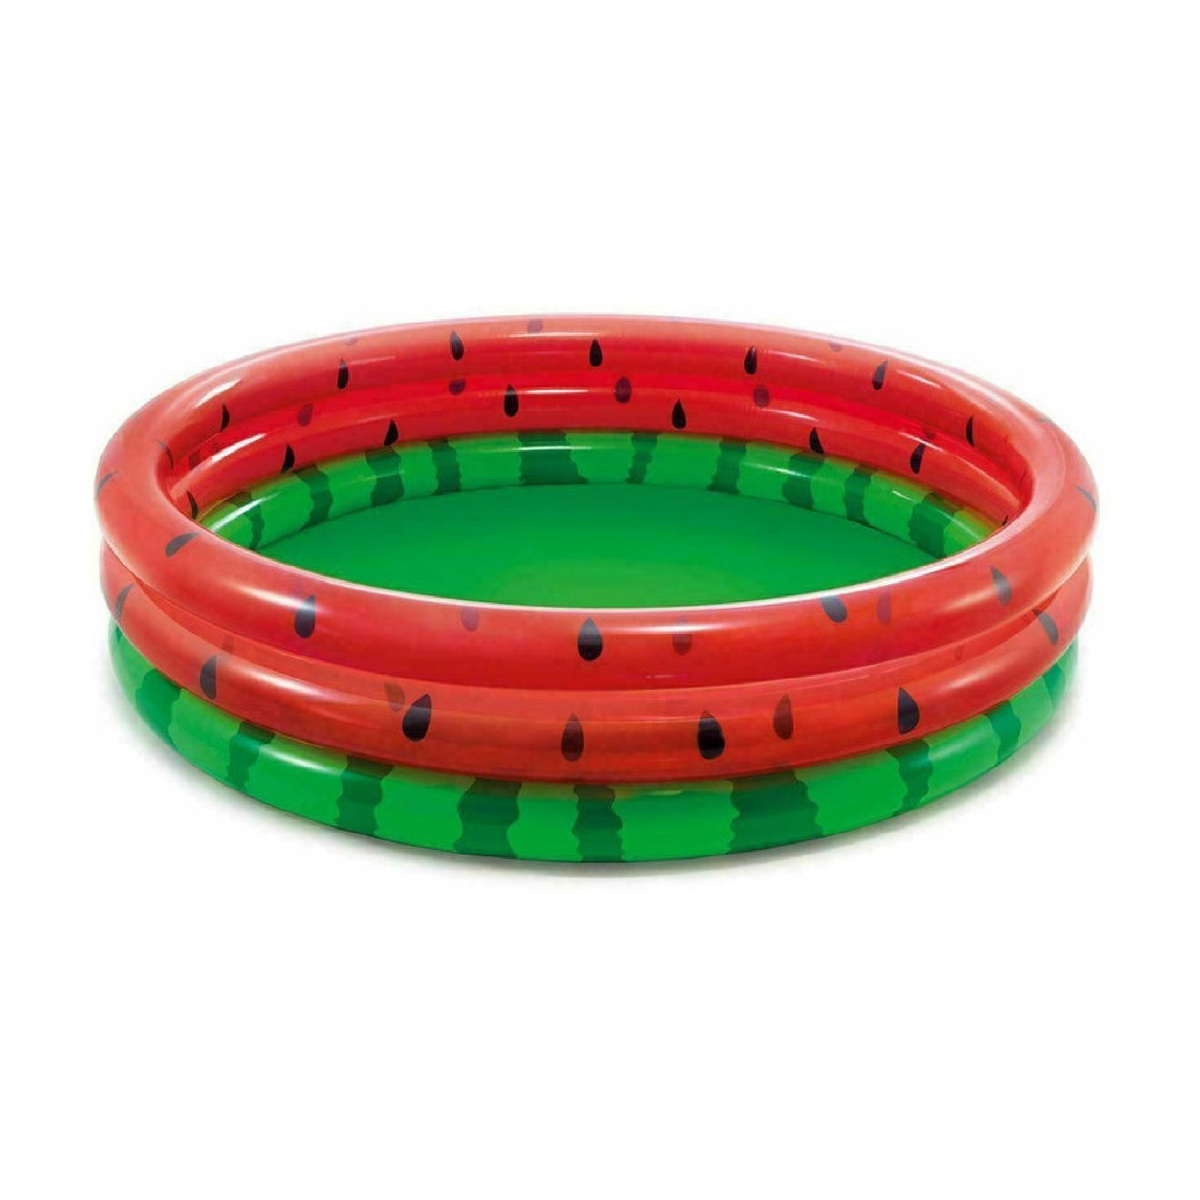 Intex Watermelon Three Ring Pool 58448